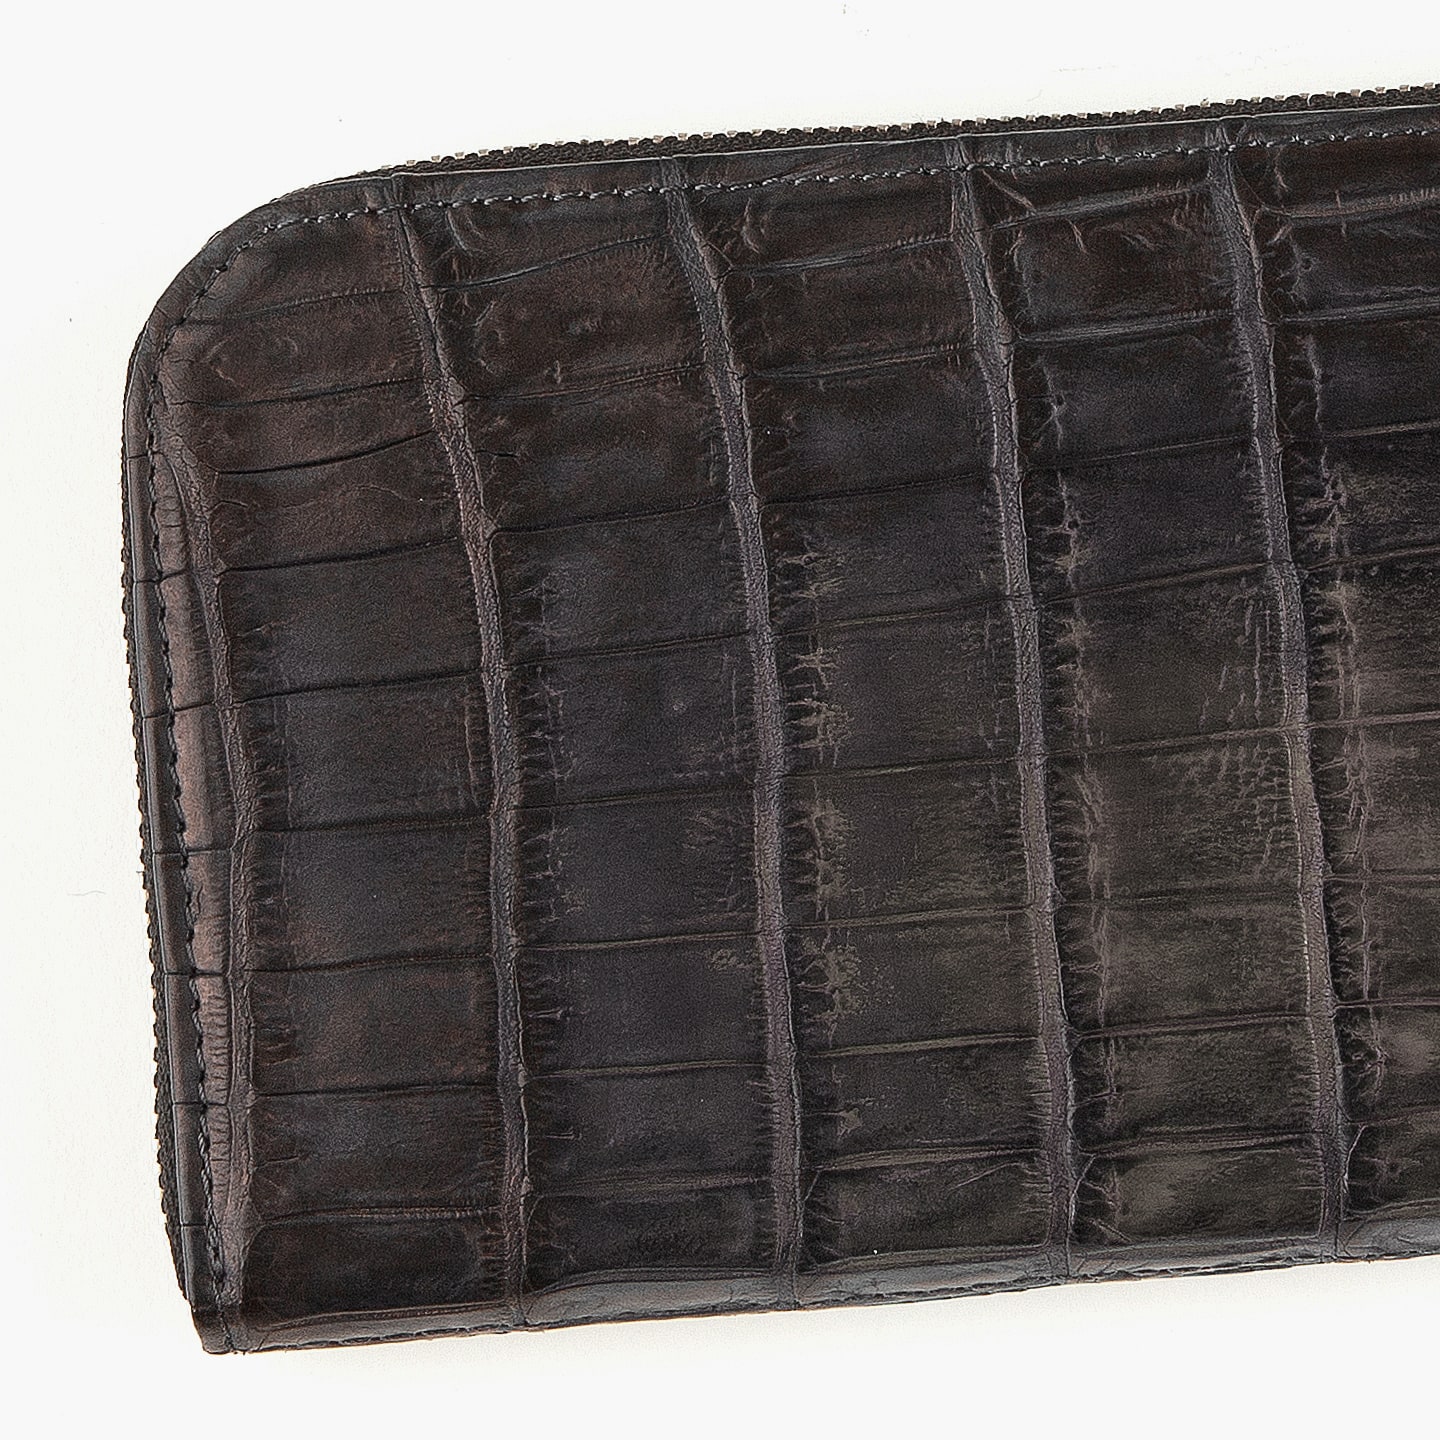 ナイルクロコダイル 手染めL字ジップ長財布 | 大人の財布・ 長財布 など拘りの日本製ブランドなら Mens Leather Store